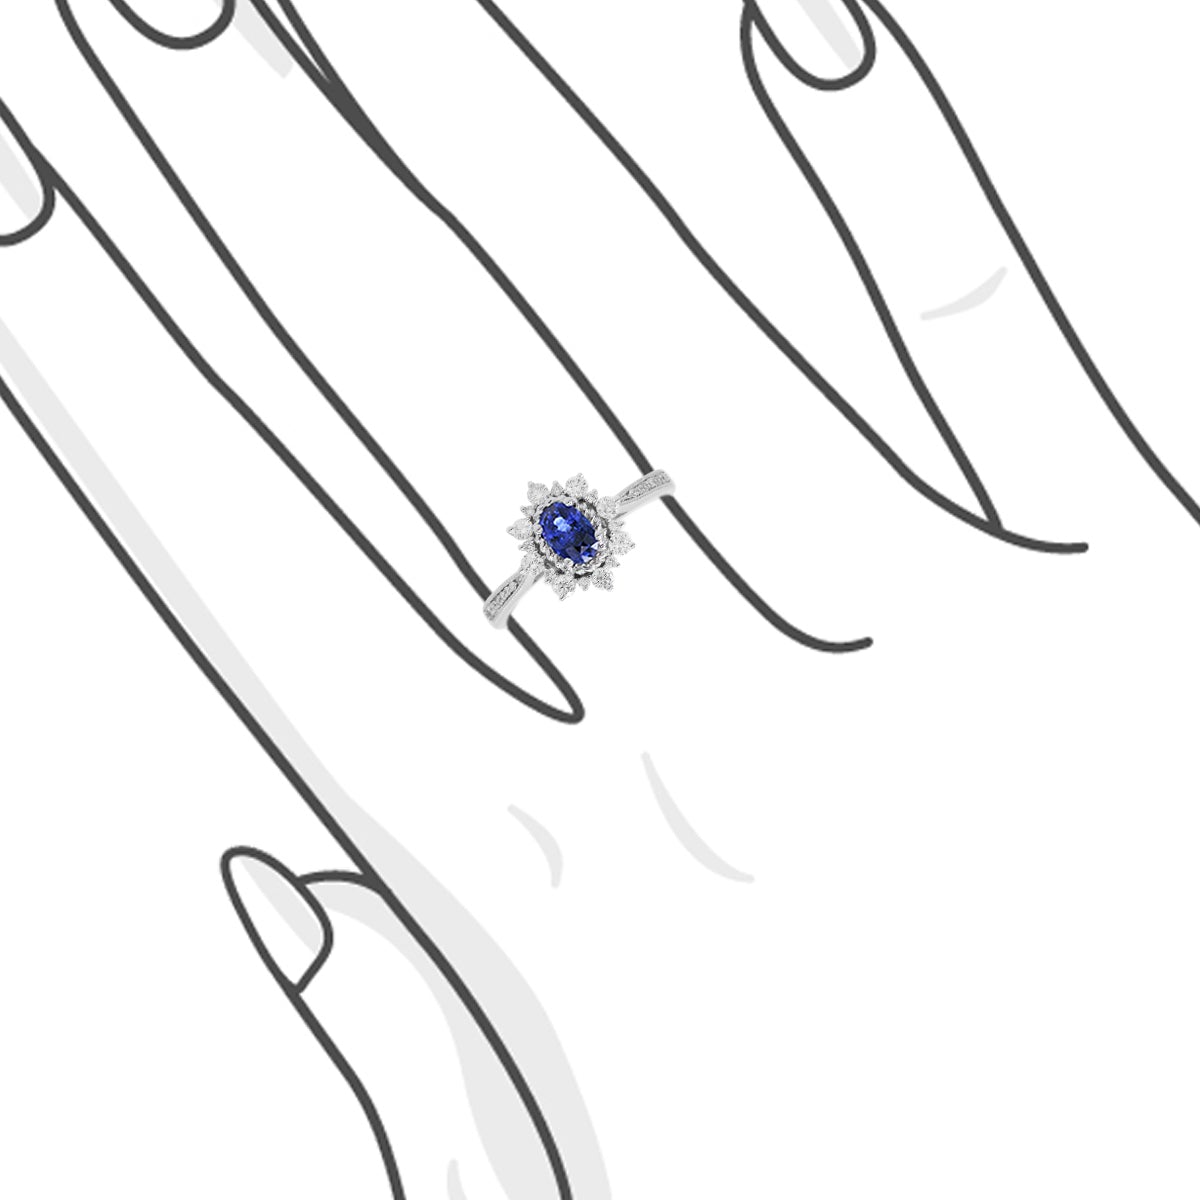 雪花橢圓形藍寶石圍石鑽石戒指 - WILLS JEWELLERY